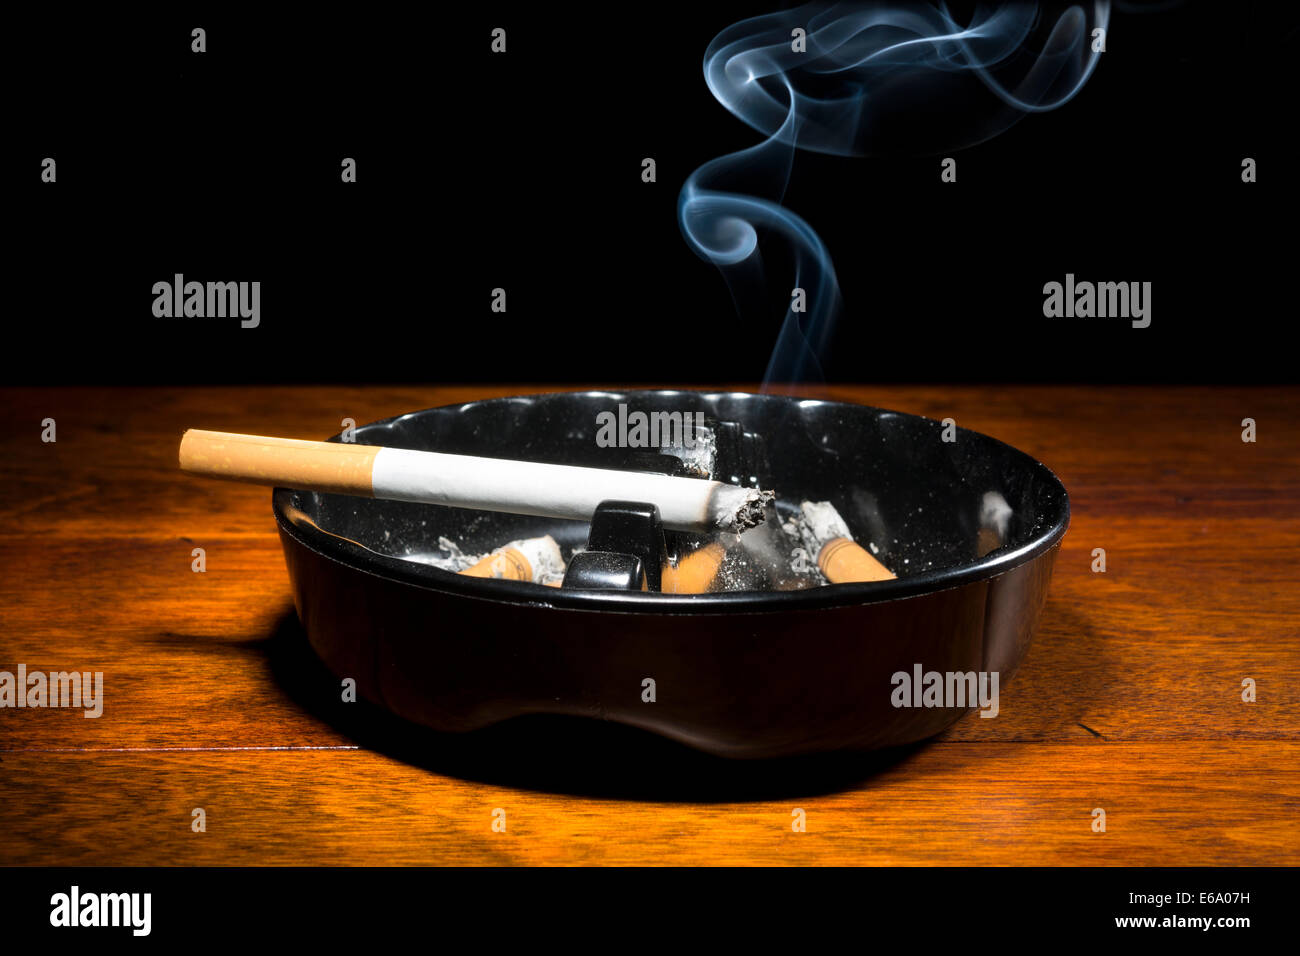 Eine brennende Zigarre in einem klassischen schwarzen Aschenbecher Streaming-Rauchen in einem dunklen, stimmungsvolle Ambiente. Stockfoto